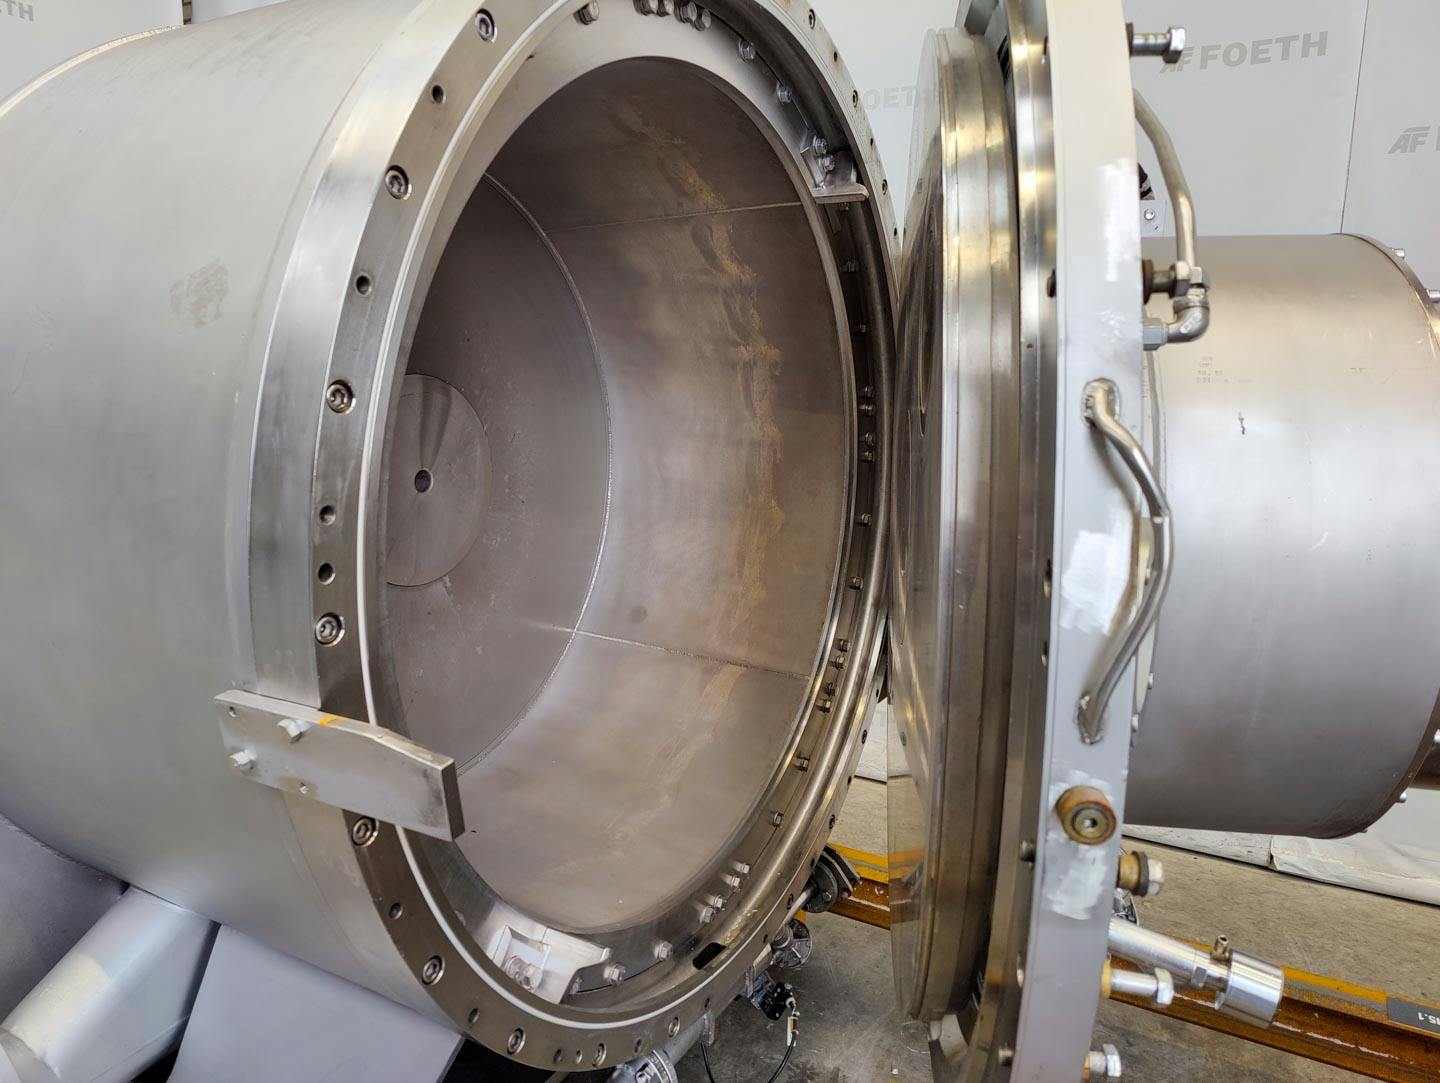 Fima Process Trockner TZT-1300 - centrifuge dryer - Wirówka koszowa - image 6